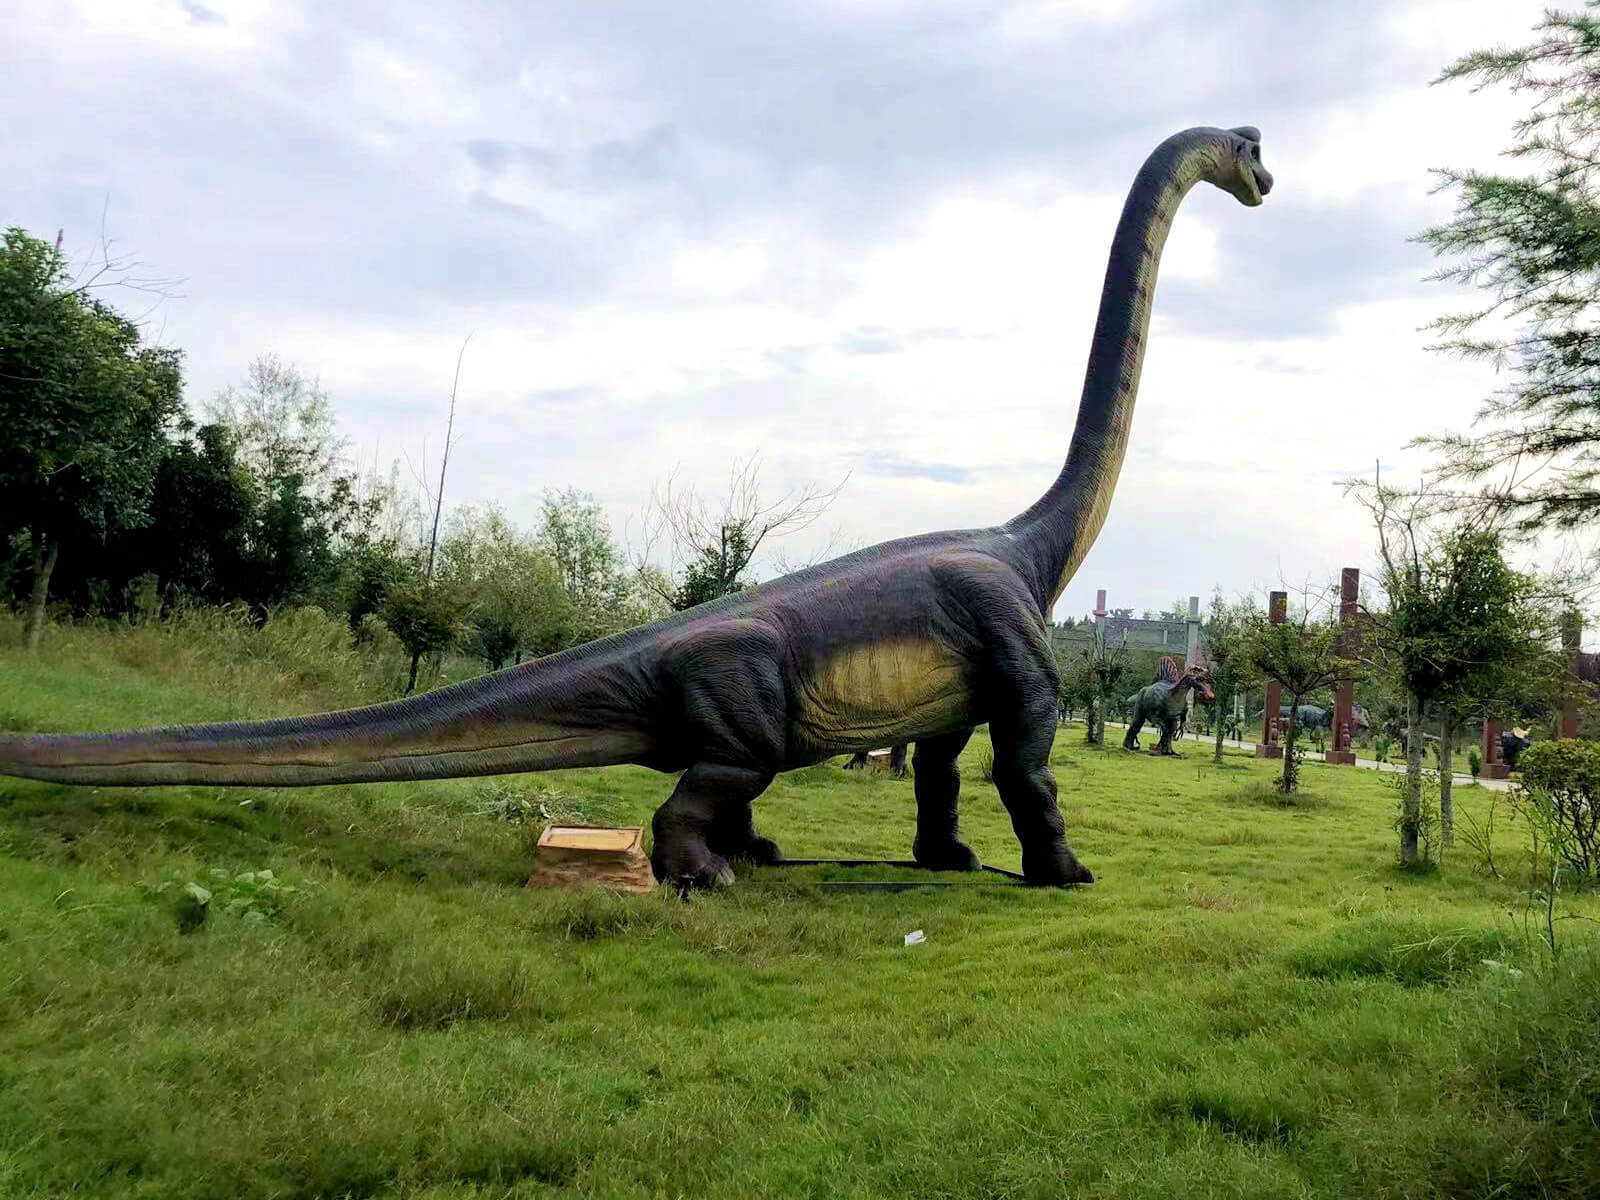 Dinosaur Park in Texas, USA